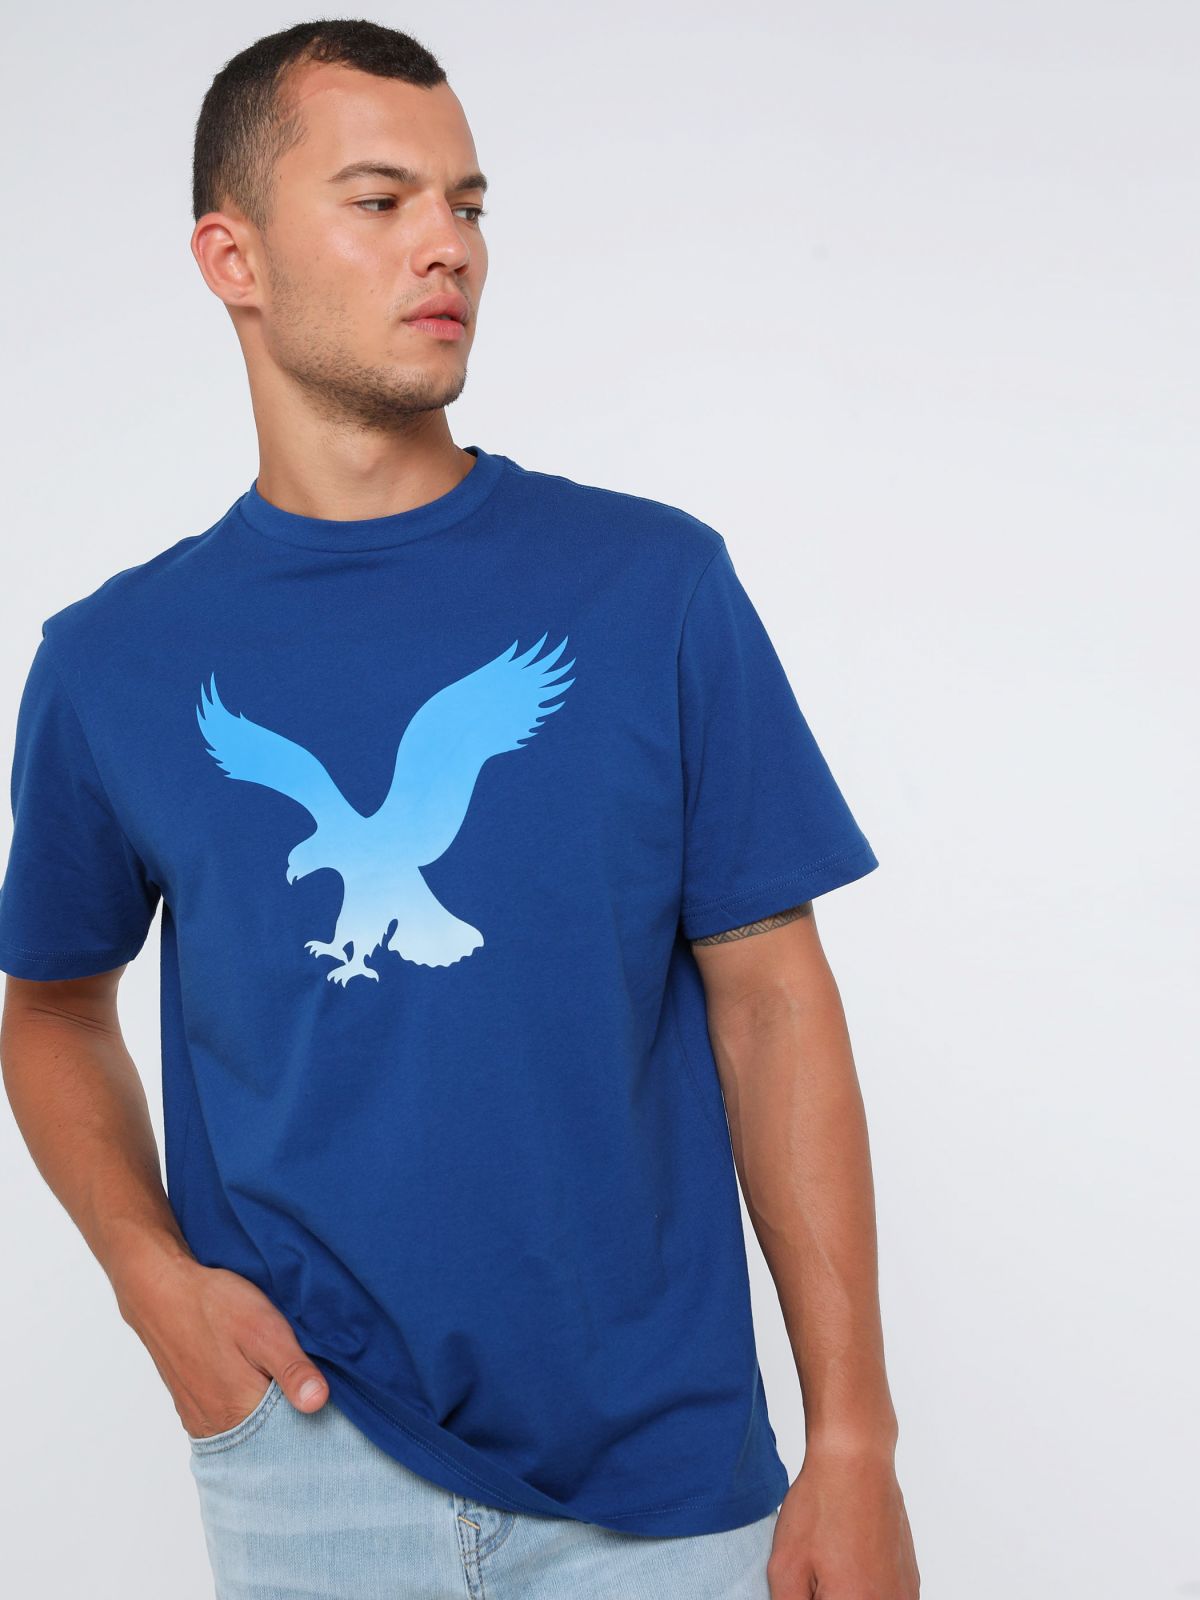  טי שירט עם הדפס לוגו של AMERICAN EAGLE